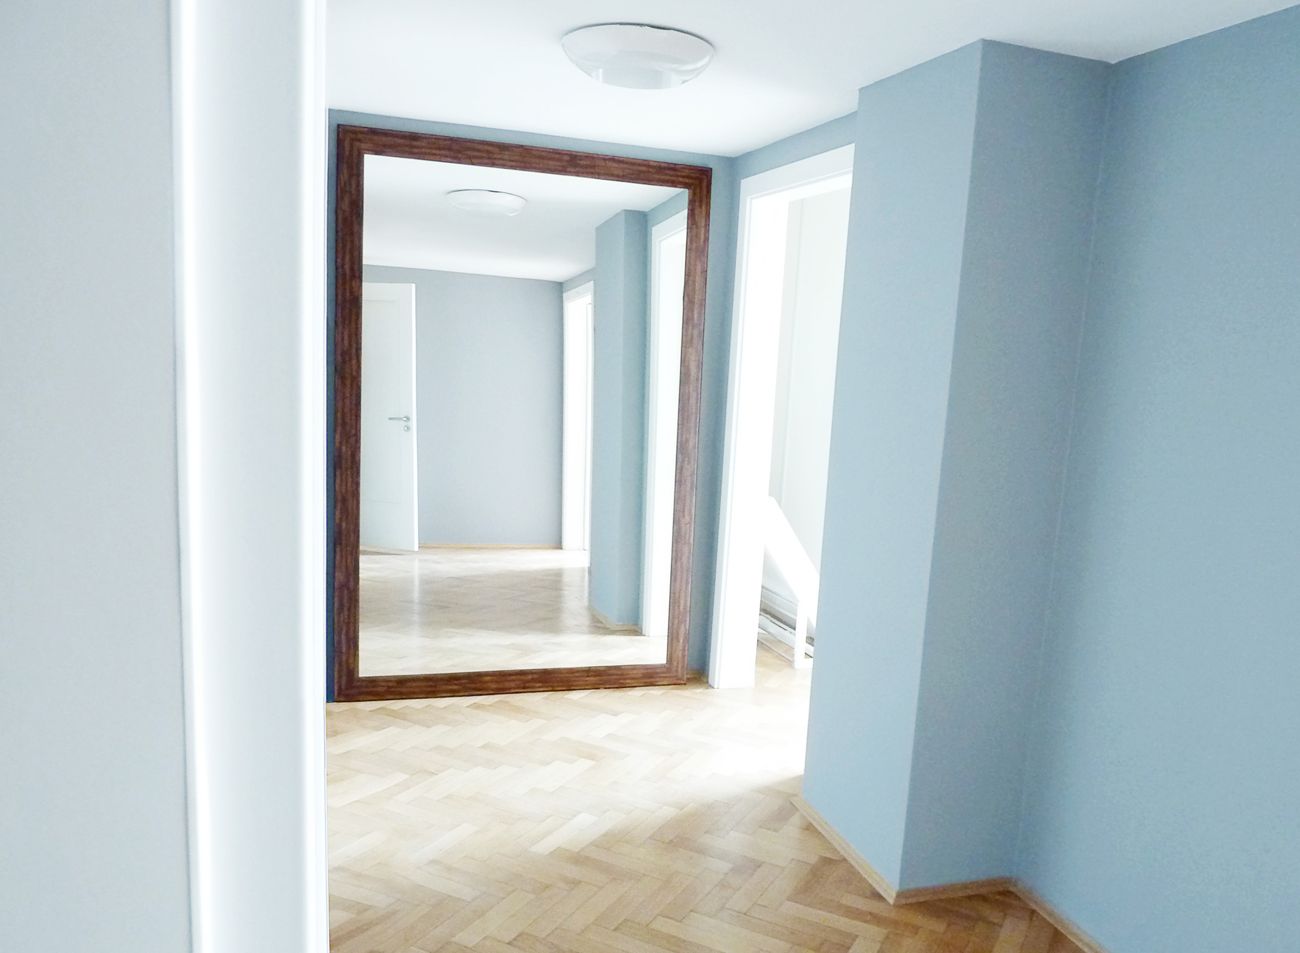 Velké XXL zrcadlo v dřevěném rámu opřené o zeď v interiéru moderní kanceláře | © Frameit